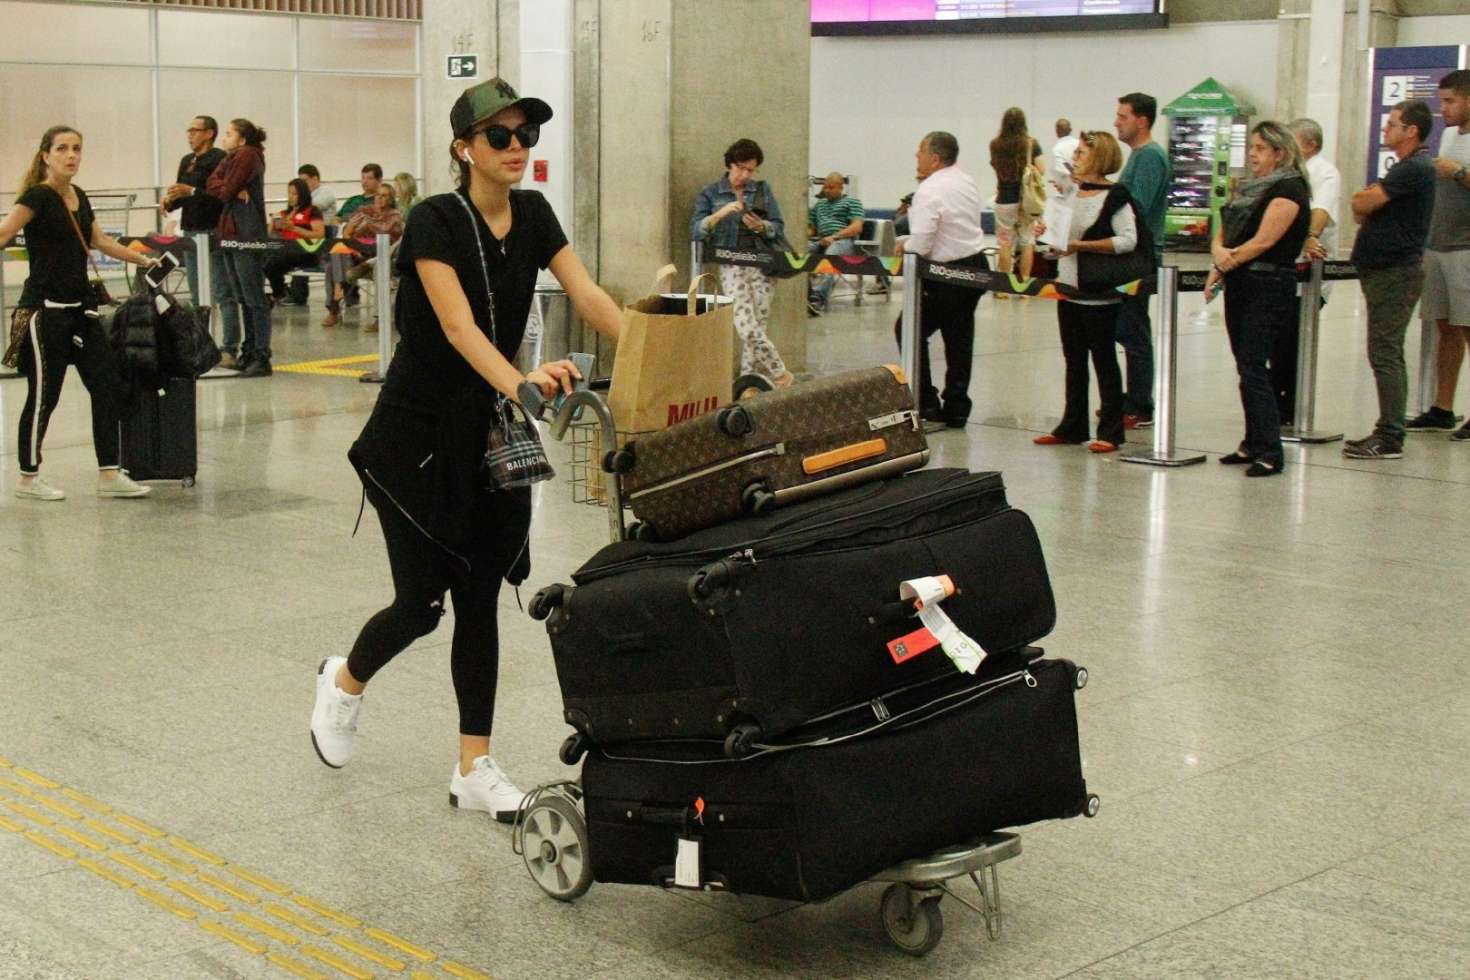 Bruna Marquezine â€“ Arrives at Rio de Janeiroâ€™s International Airport